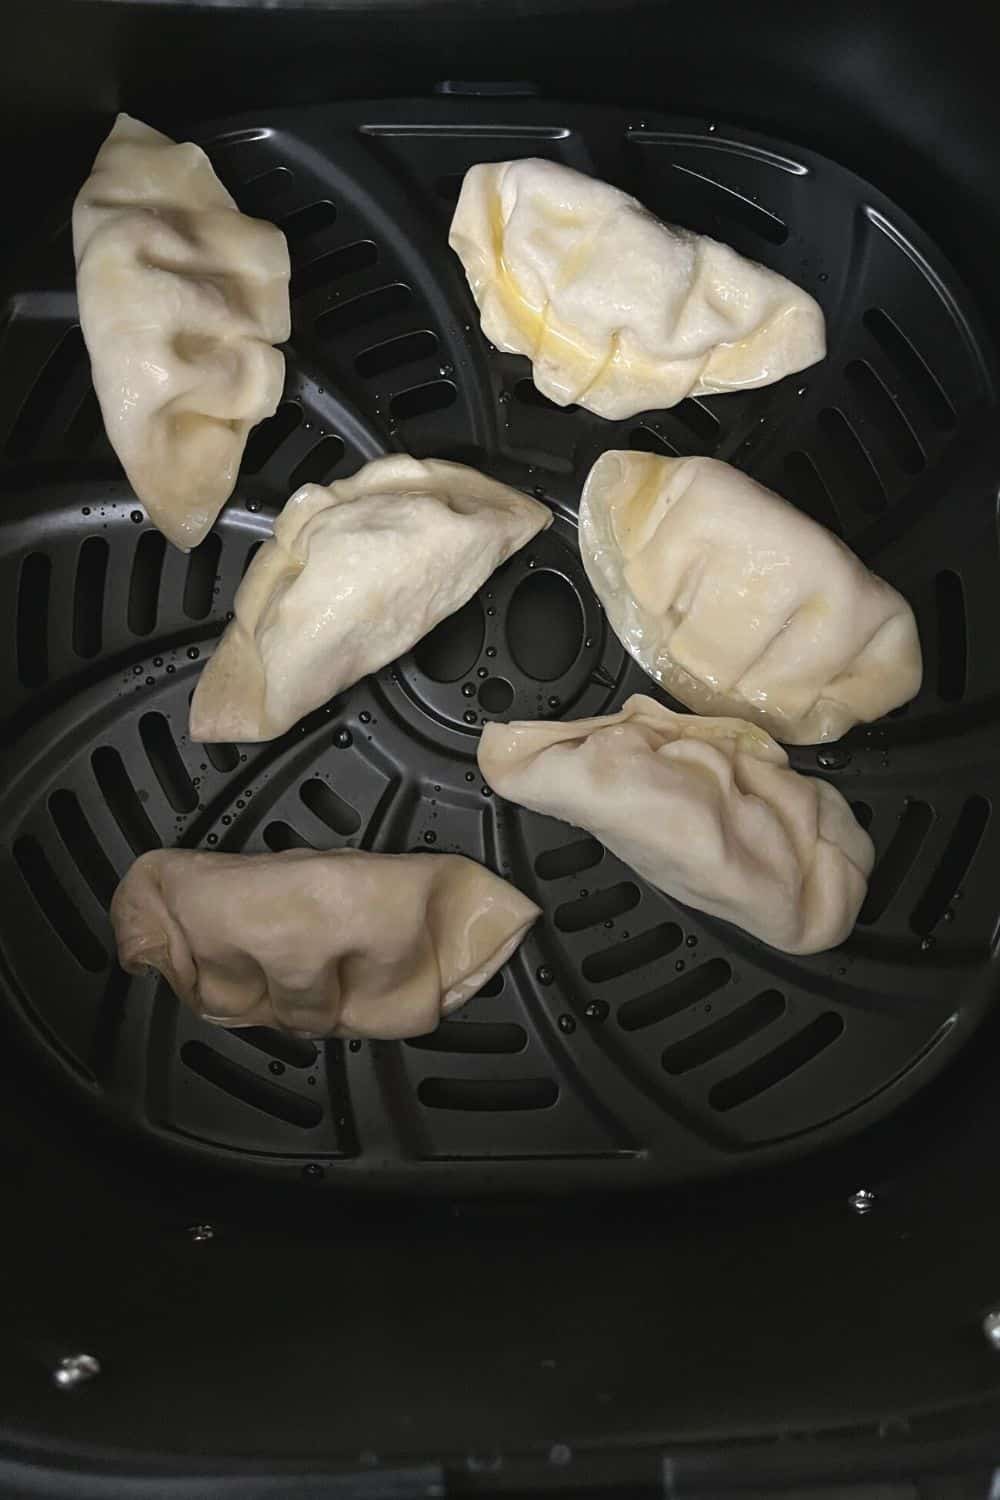 frozen dumplings in the basket of an air fryer